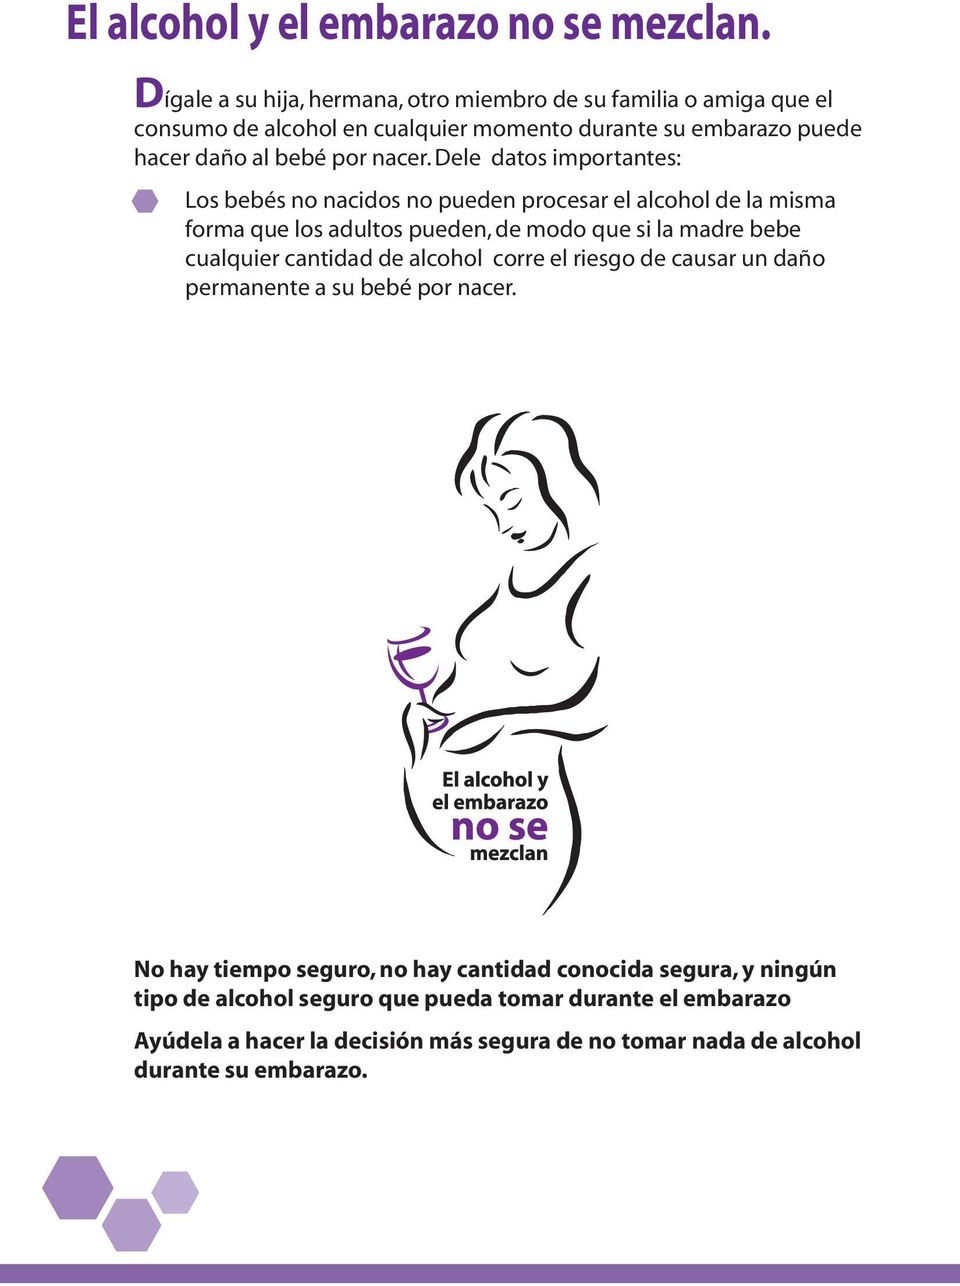 Dele datos importantes: Los bebés no nacidos no pueden procesar el alcohol de la misma forma que los adultos pueden, de modo que si la madre bebe cualquier cantidad